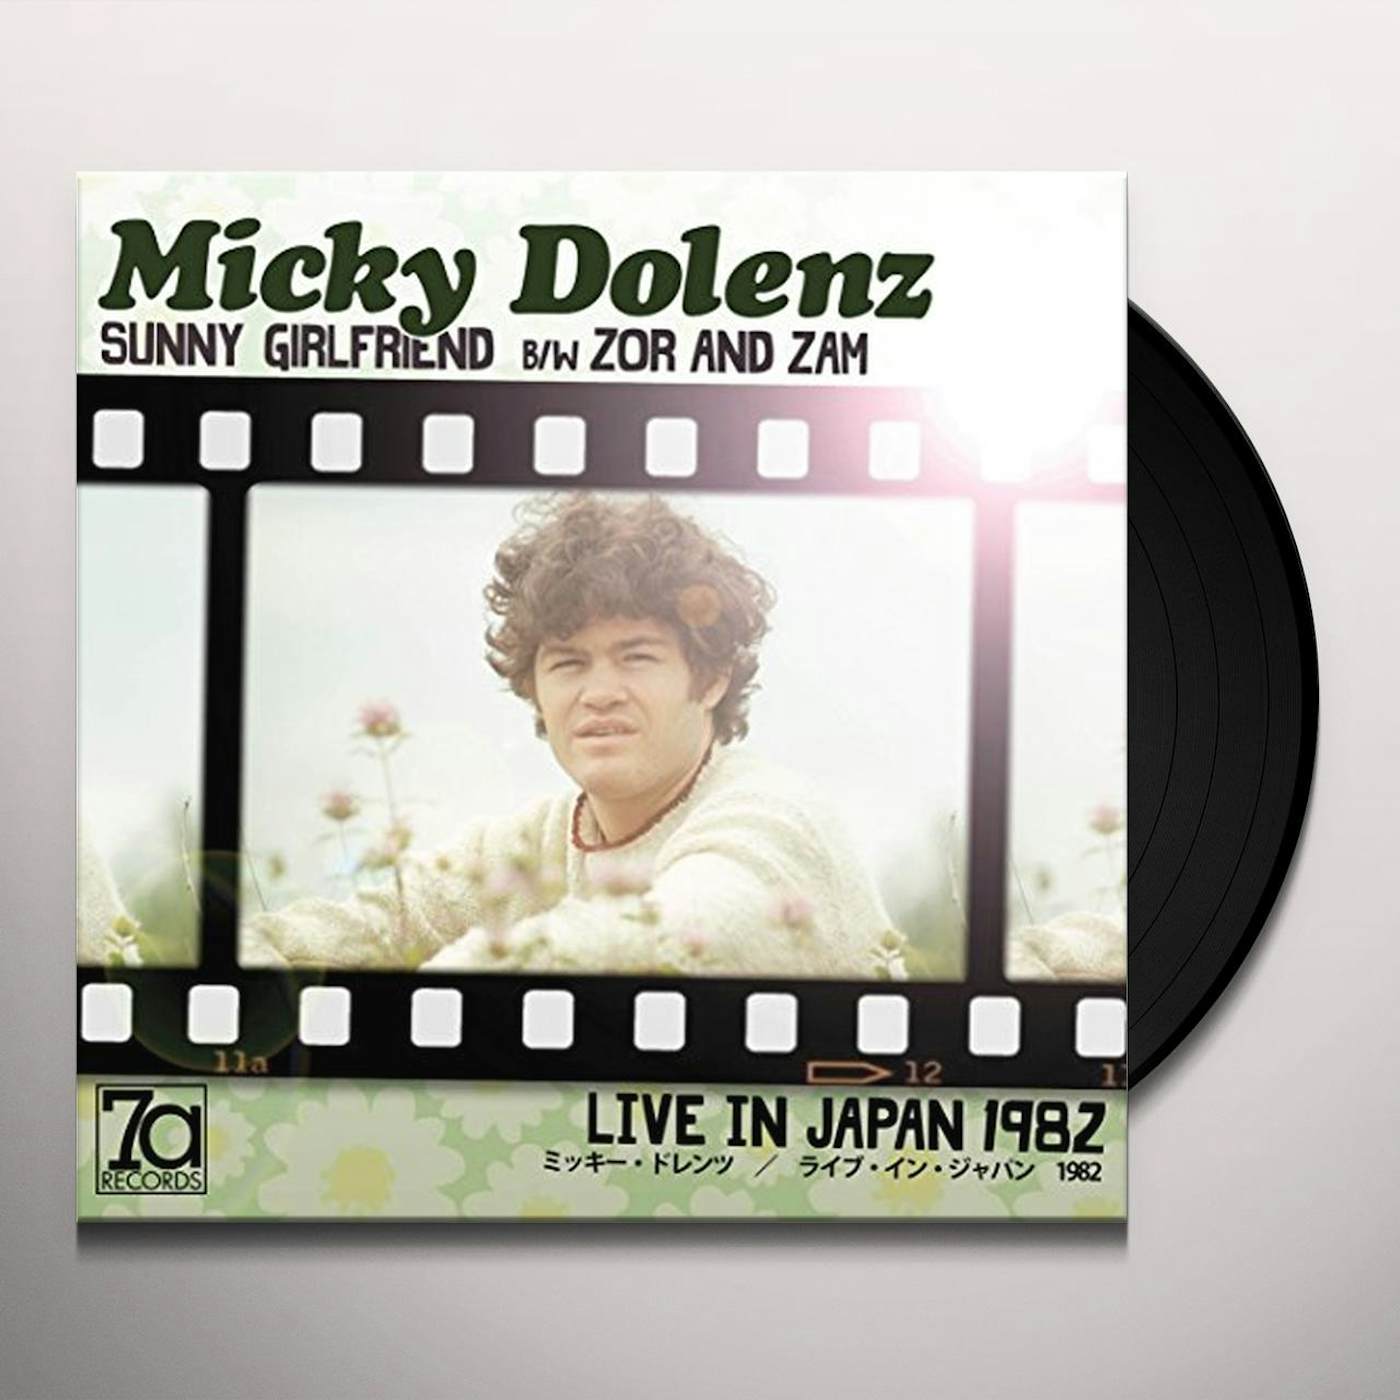 Micky Dolenz SUNNY GIRLFRIEND Vinyl Record